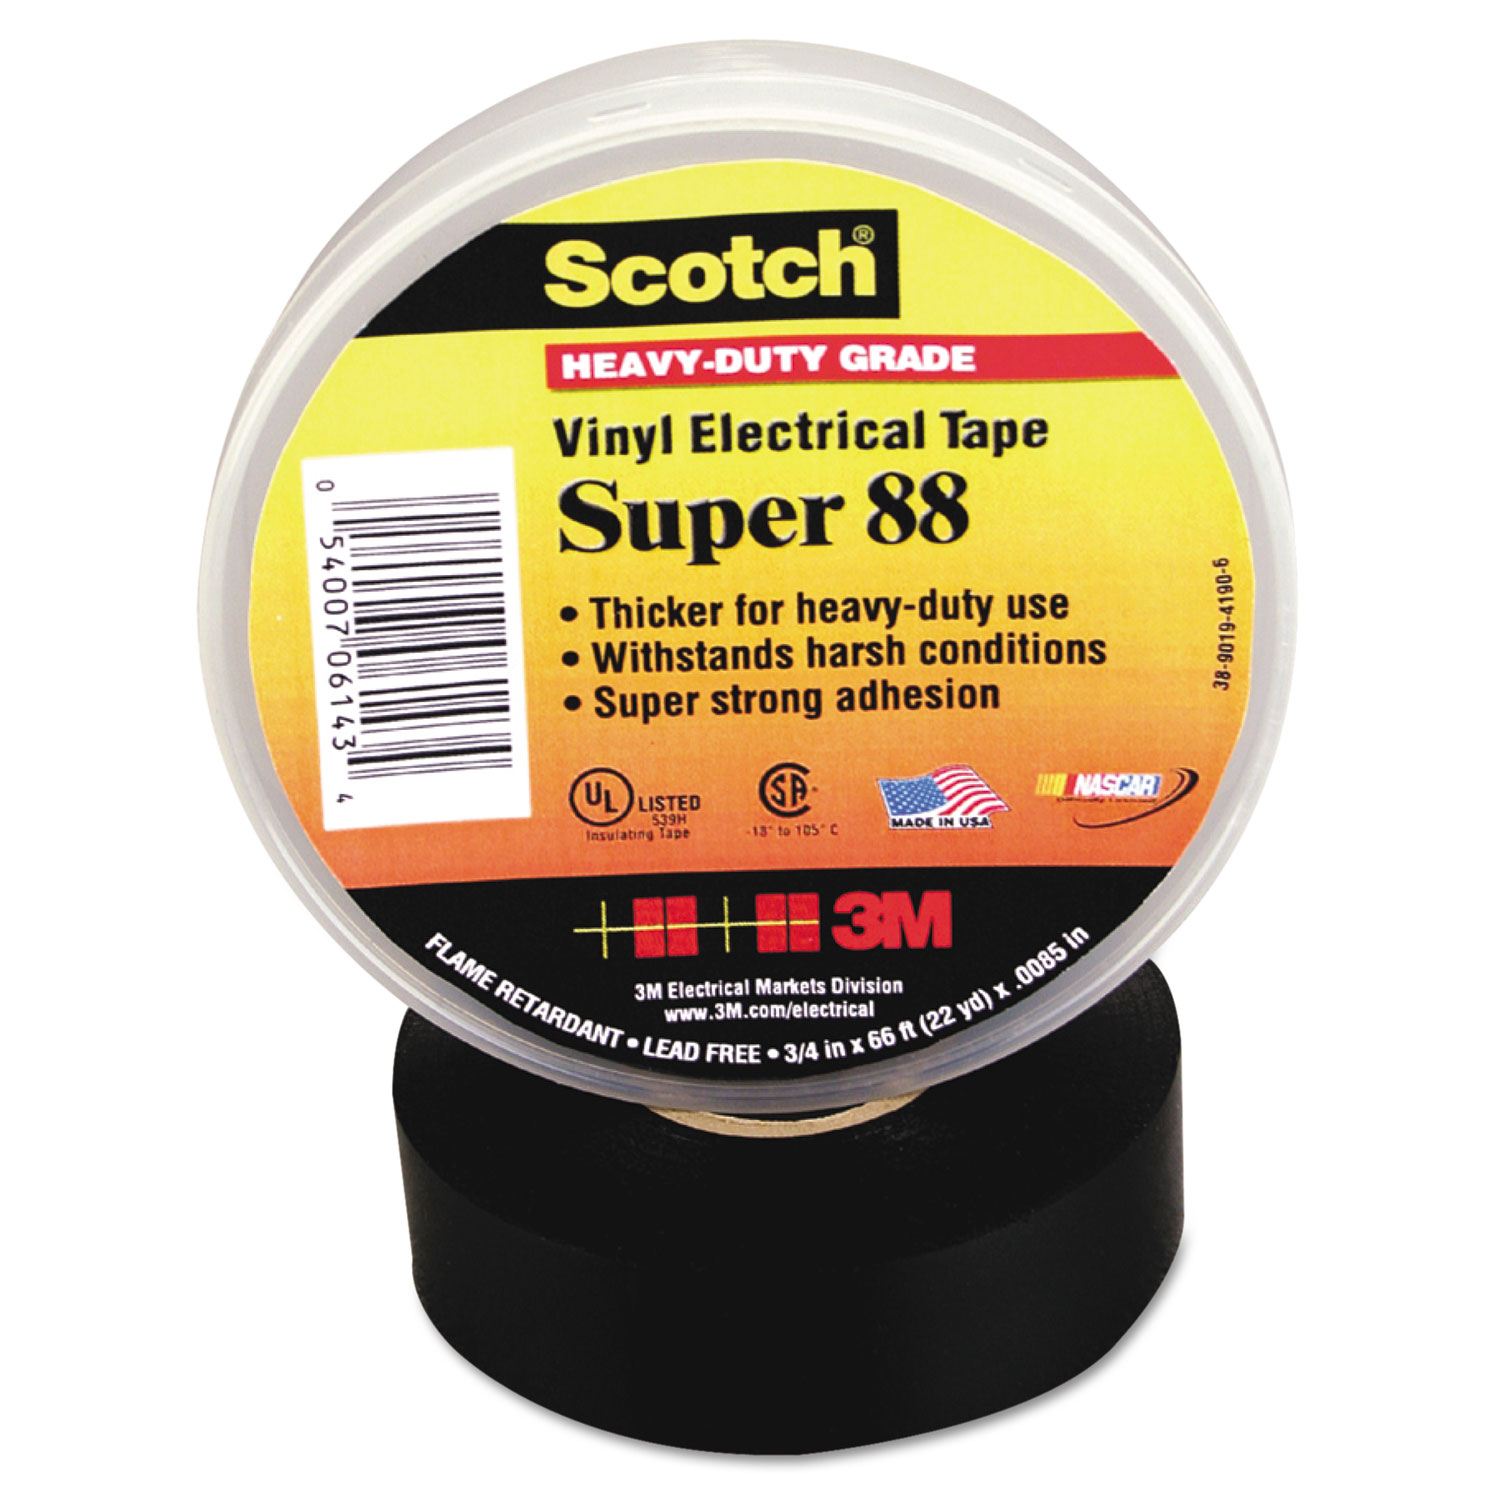 Scotch 88 Super Vinyl Electrical Tape, 3/4 x 66ft